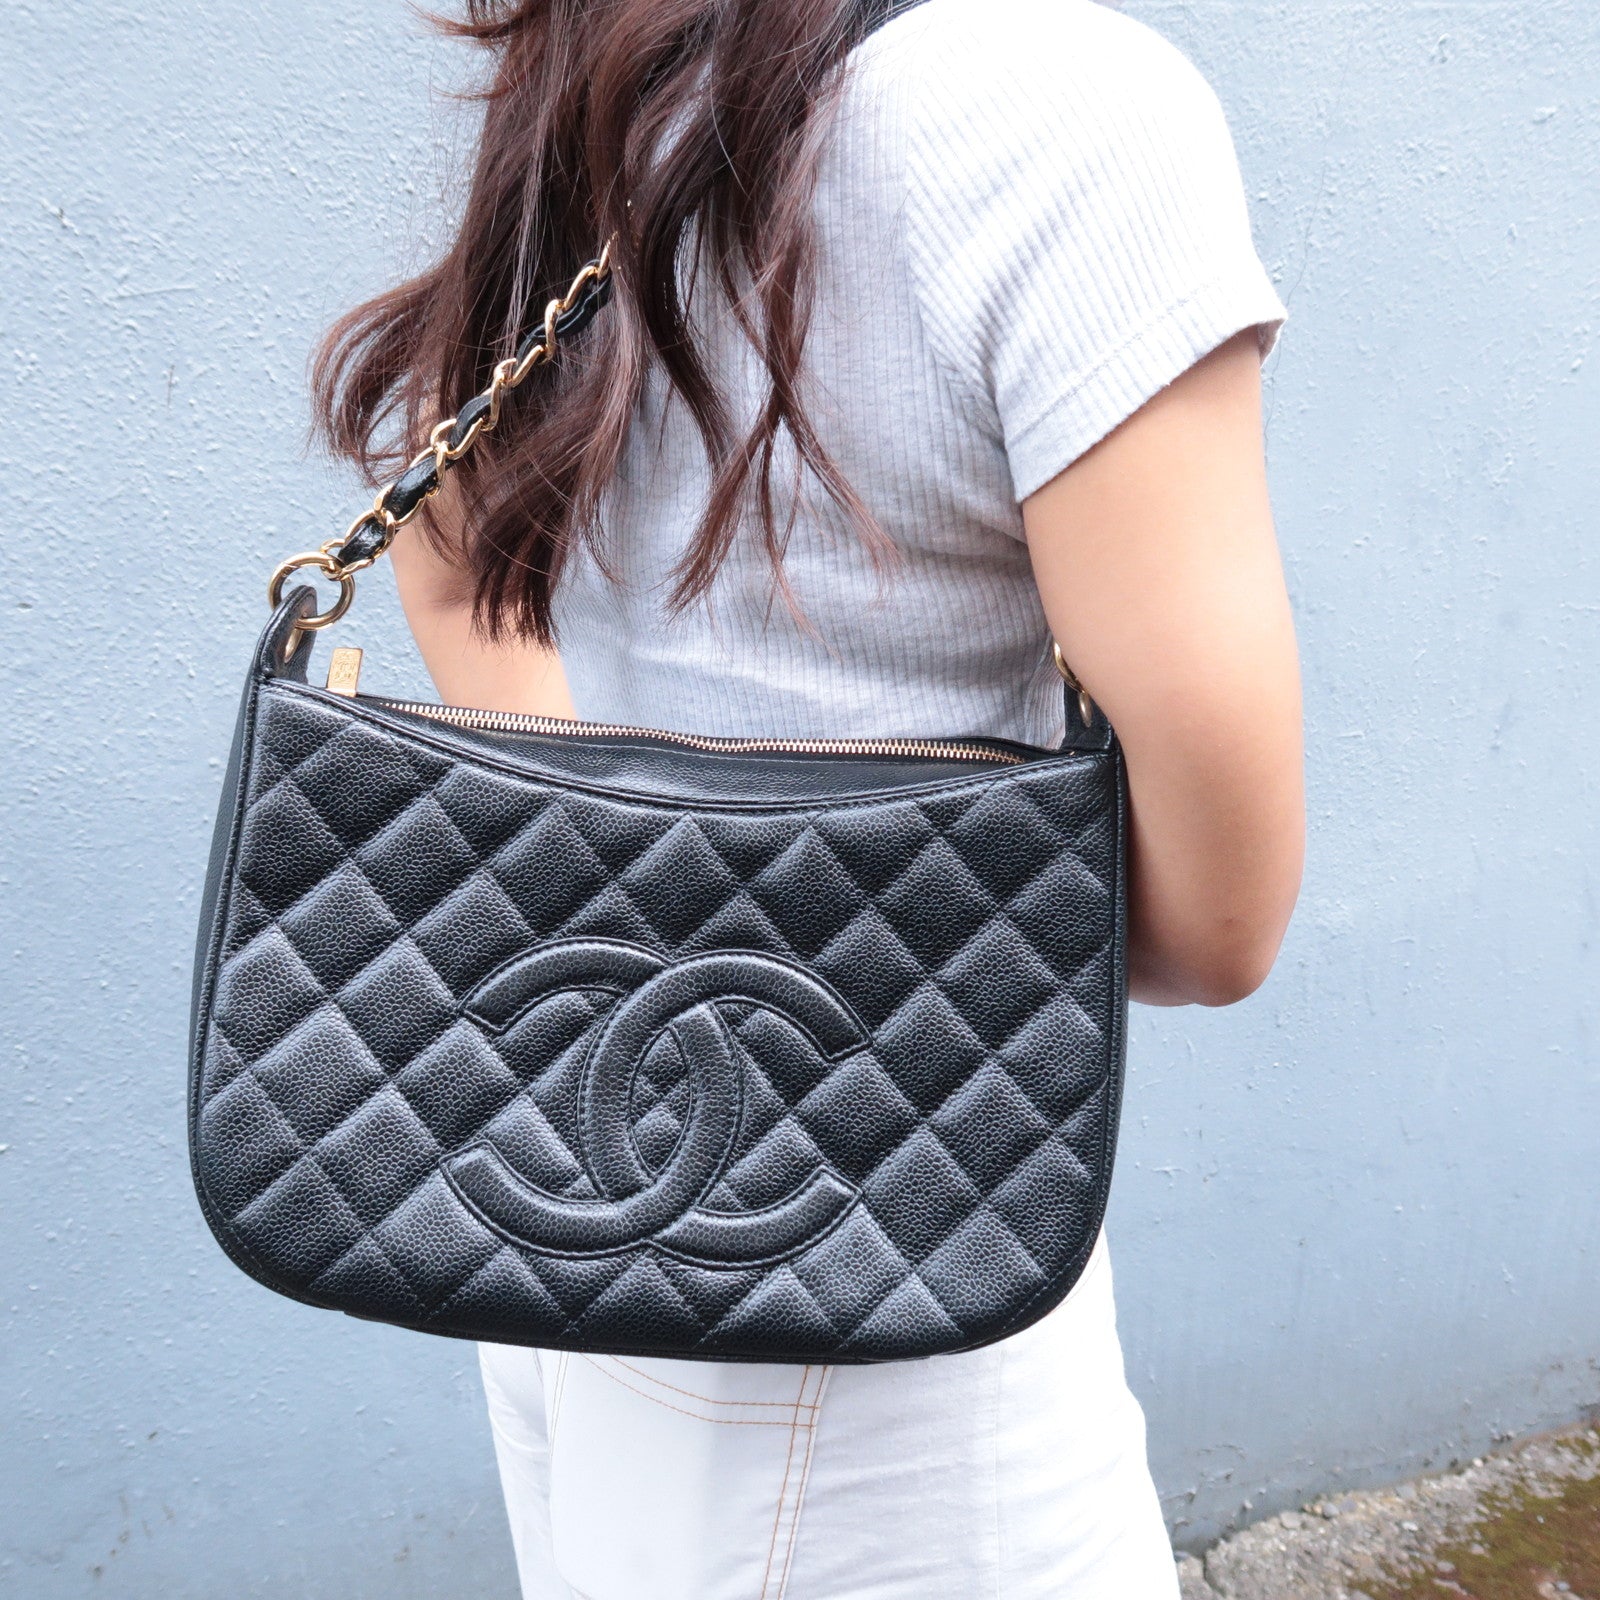 Chanel Pre-owned Timeless Shoulder Bag